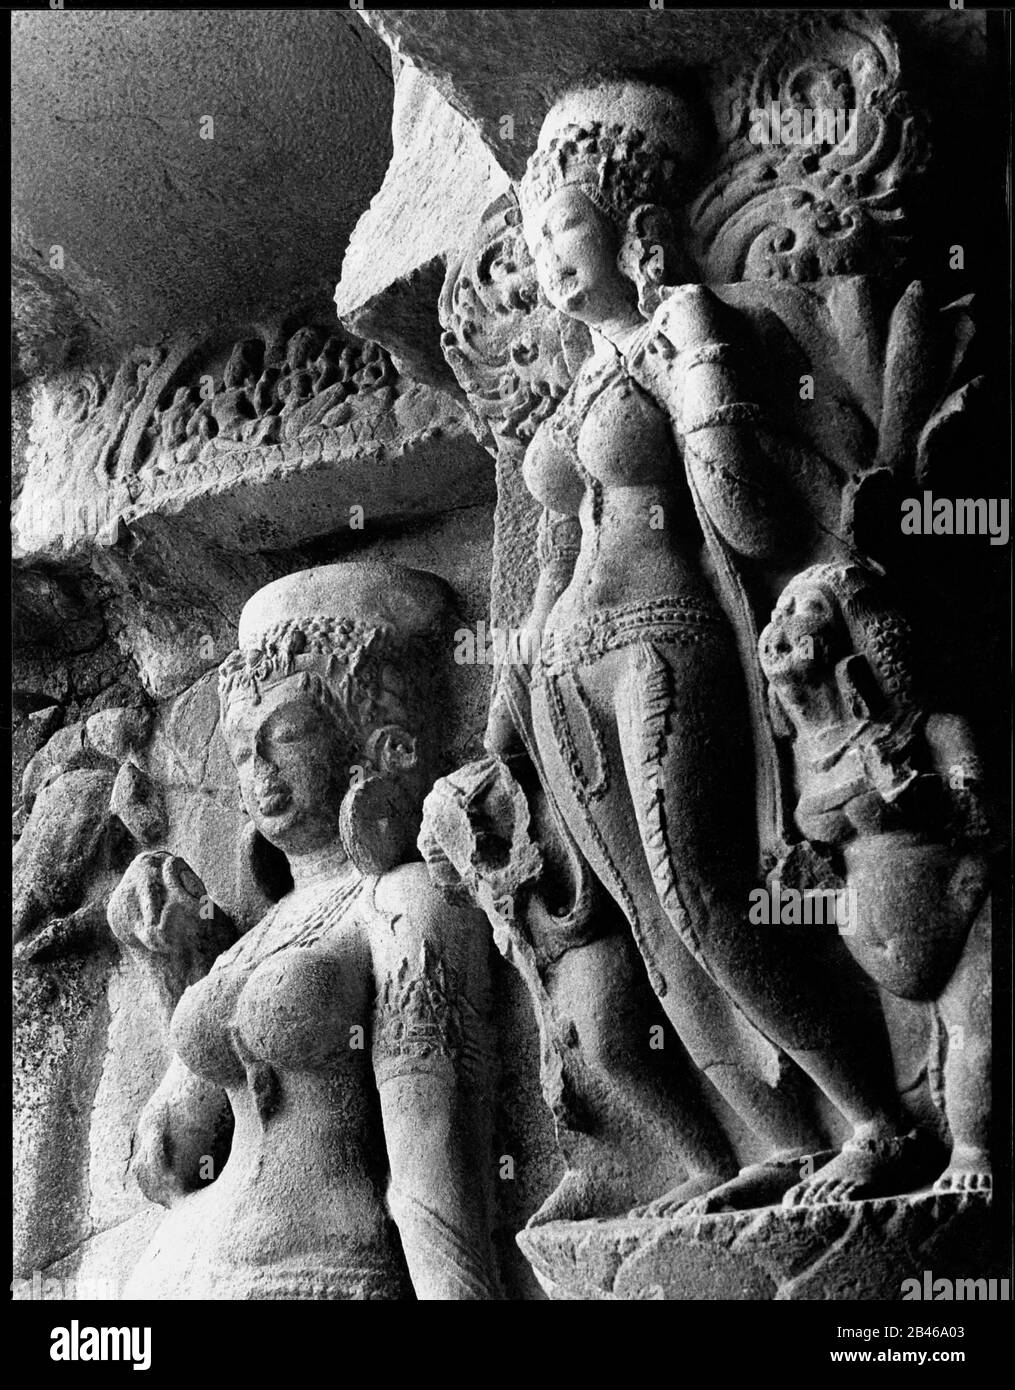 Ganga et Yamuna, grotte d'Ellora, site classé au patrimoine mondial de l'UNESCO, Aurangabad, Maharashtra, Inde, Asie, 1977, ancienne image ancienne des années 1900 Banque D'Images